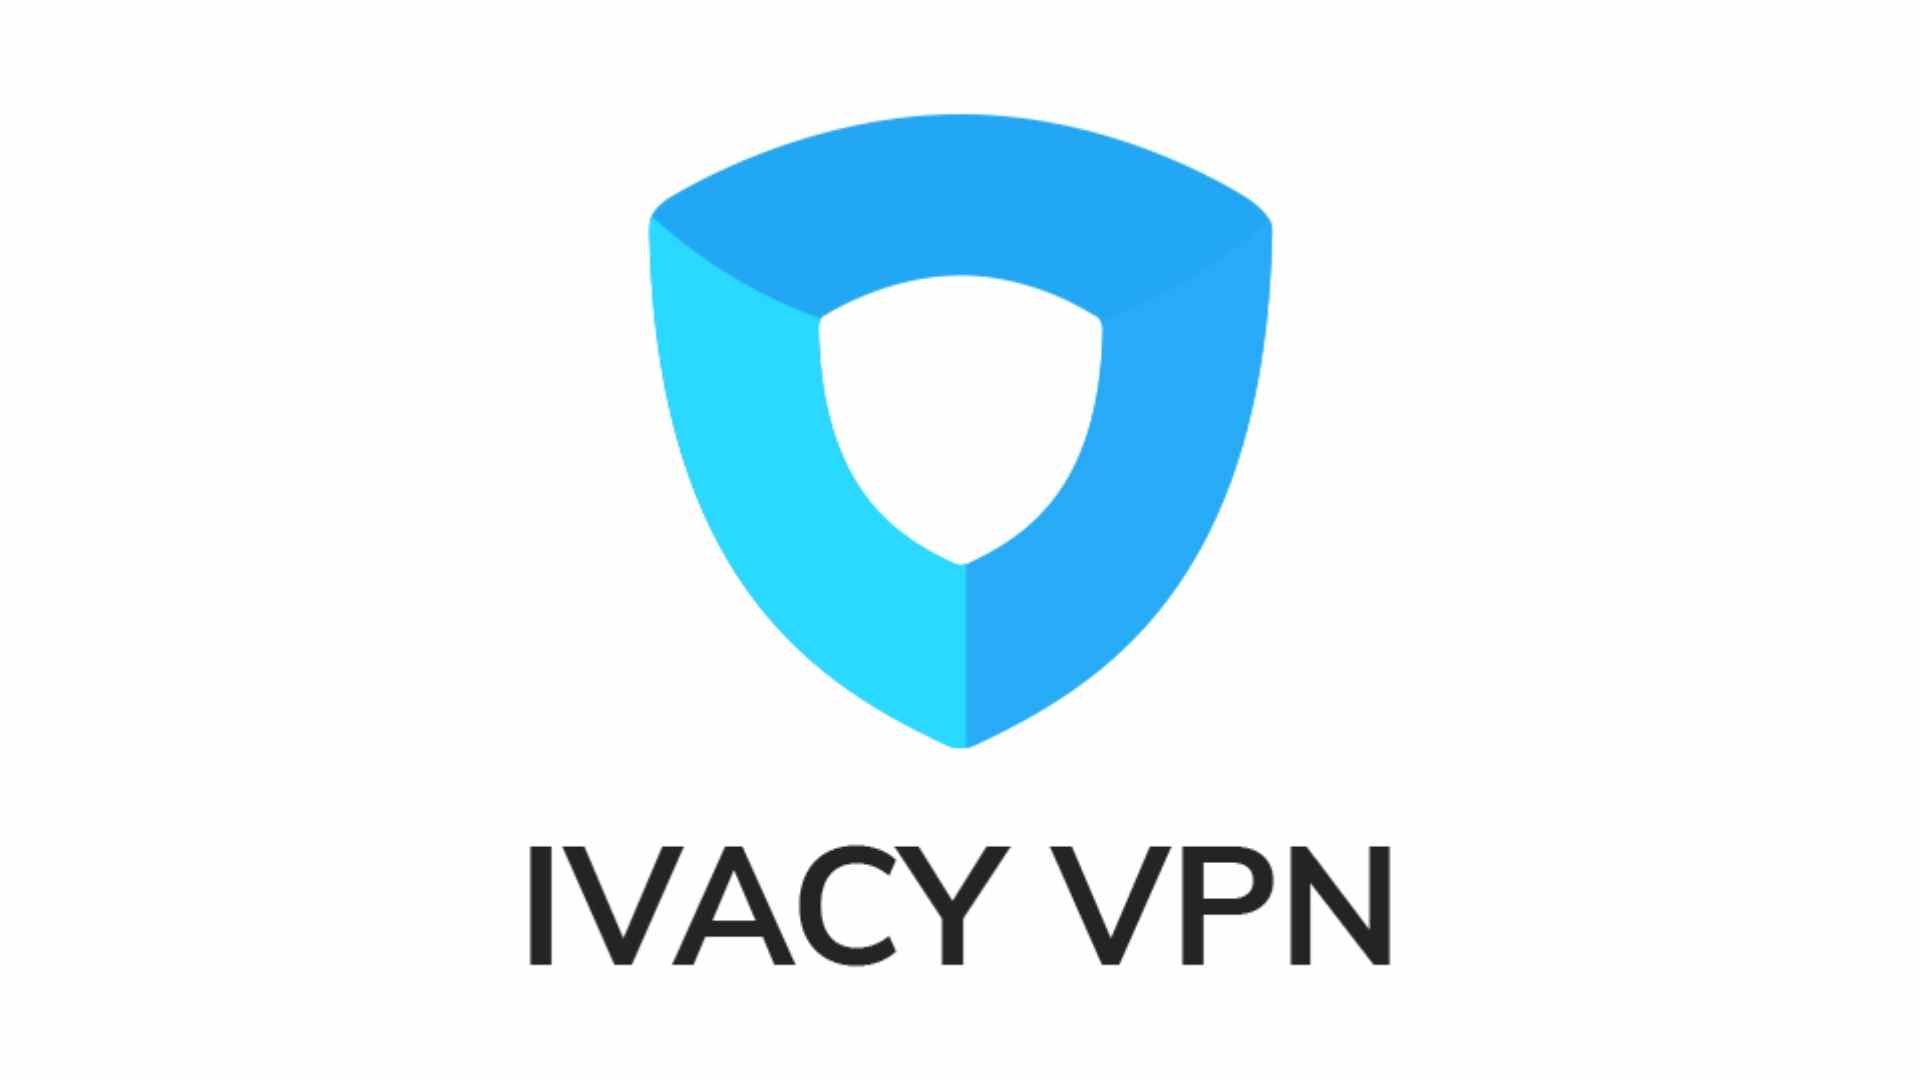 Offres VPN : Ivacy VPN - l'image montre le logo de l'entreprise